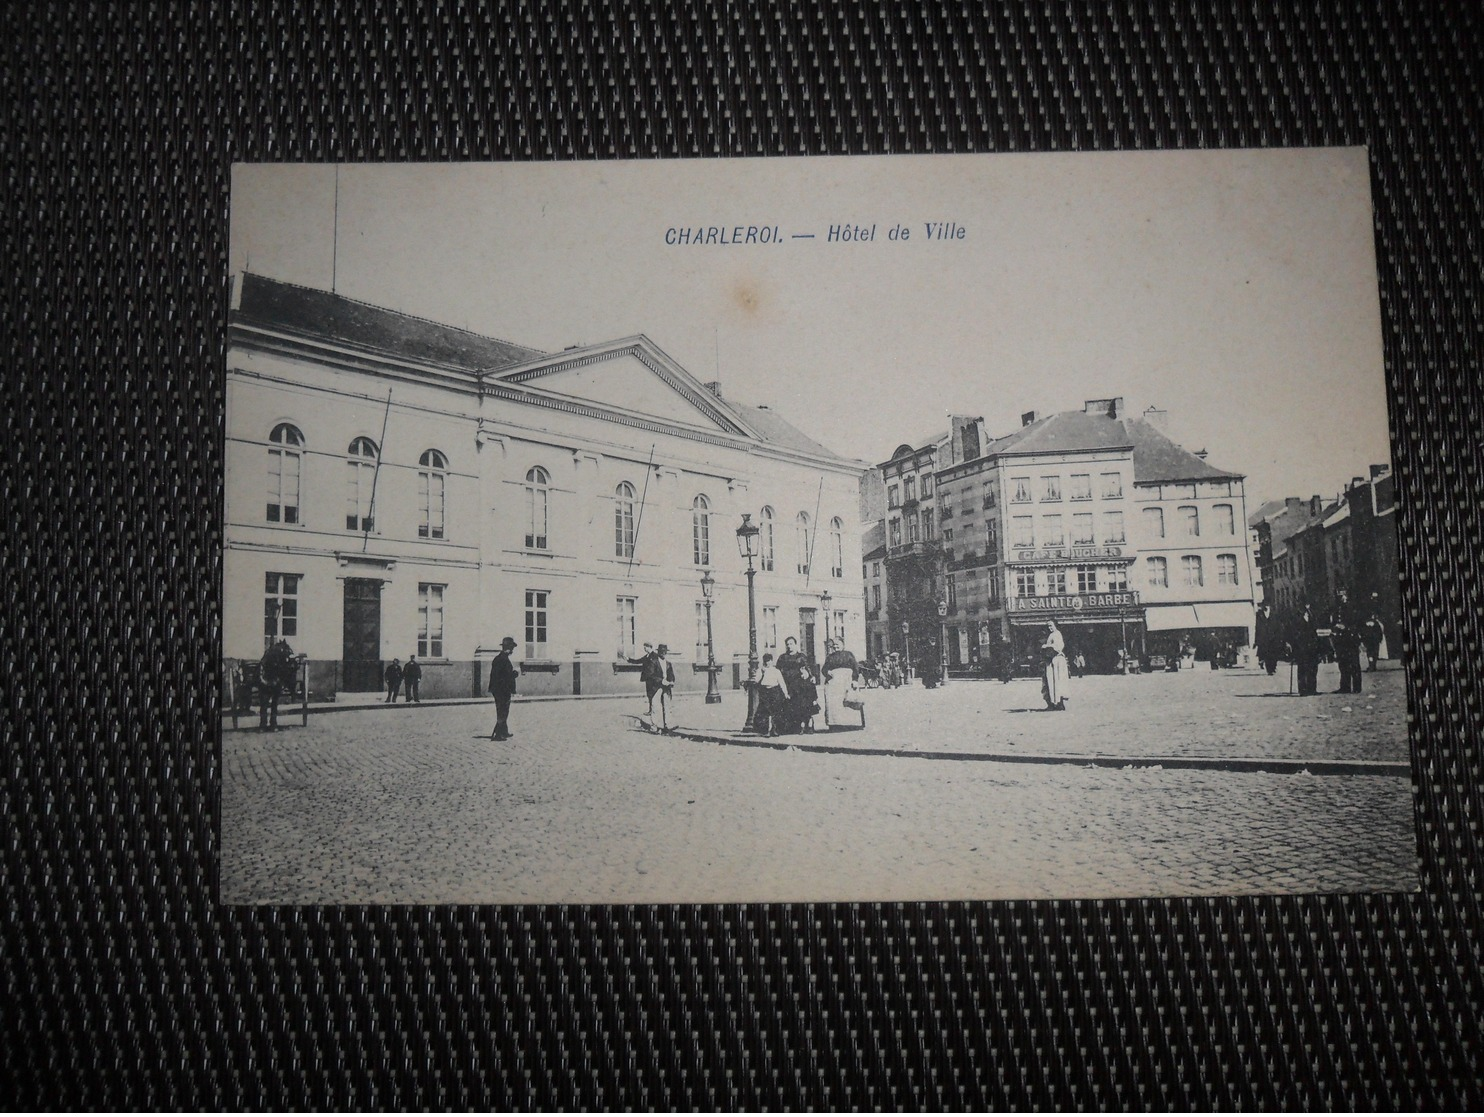 Beau lot de 60 cartes postales de Belgique     Mooi lot van 60 postkaarten van België  - 60 scans